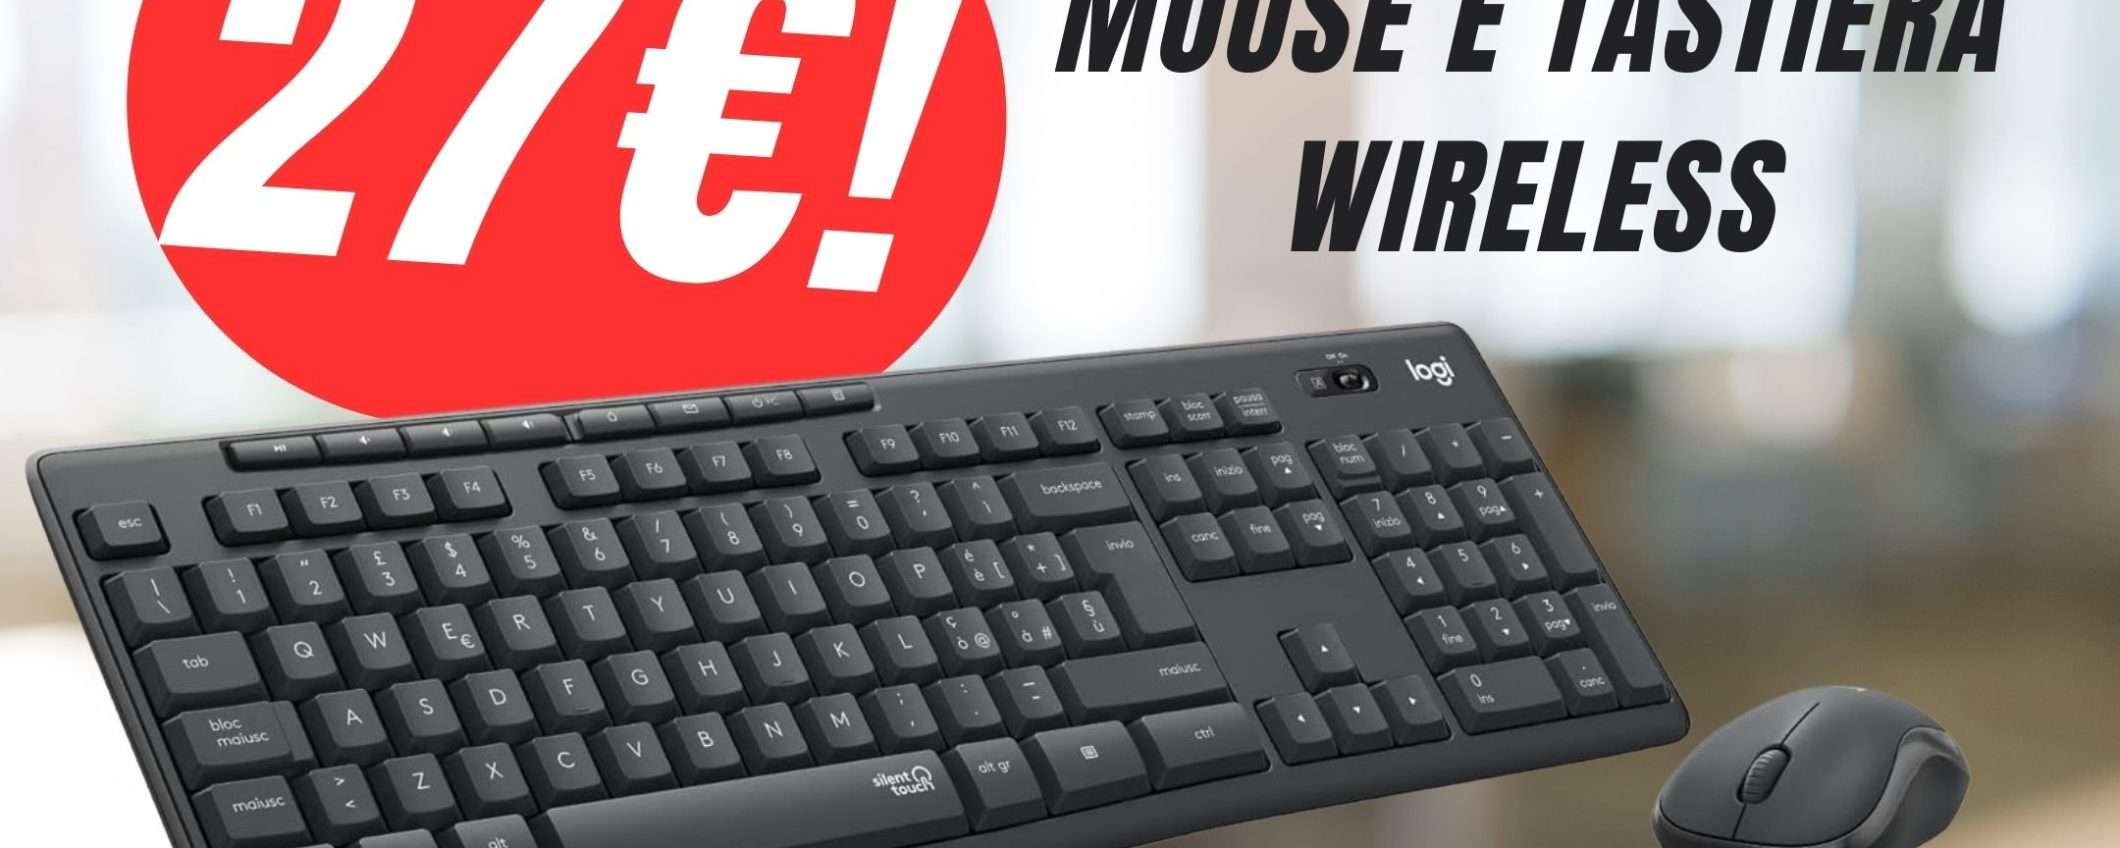 Combo Mouse e Tastiera senza fili a 27€? Sì, grazie allo SCONTO Amazon!